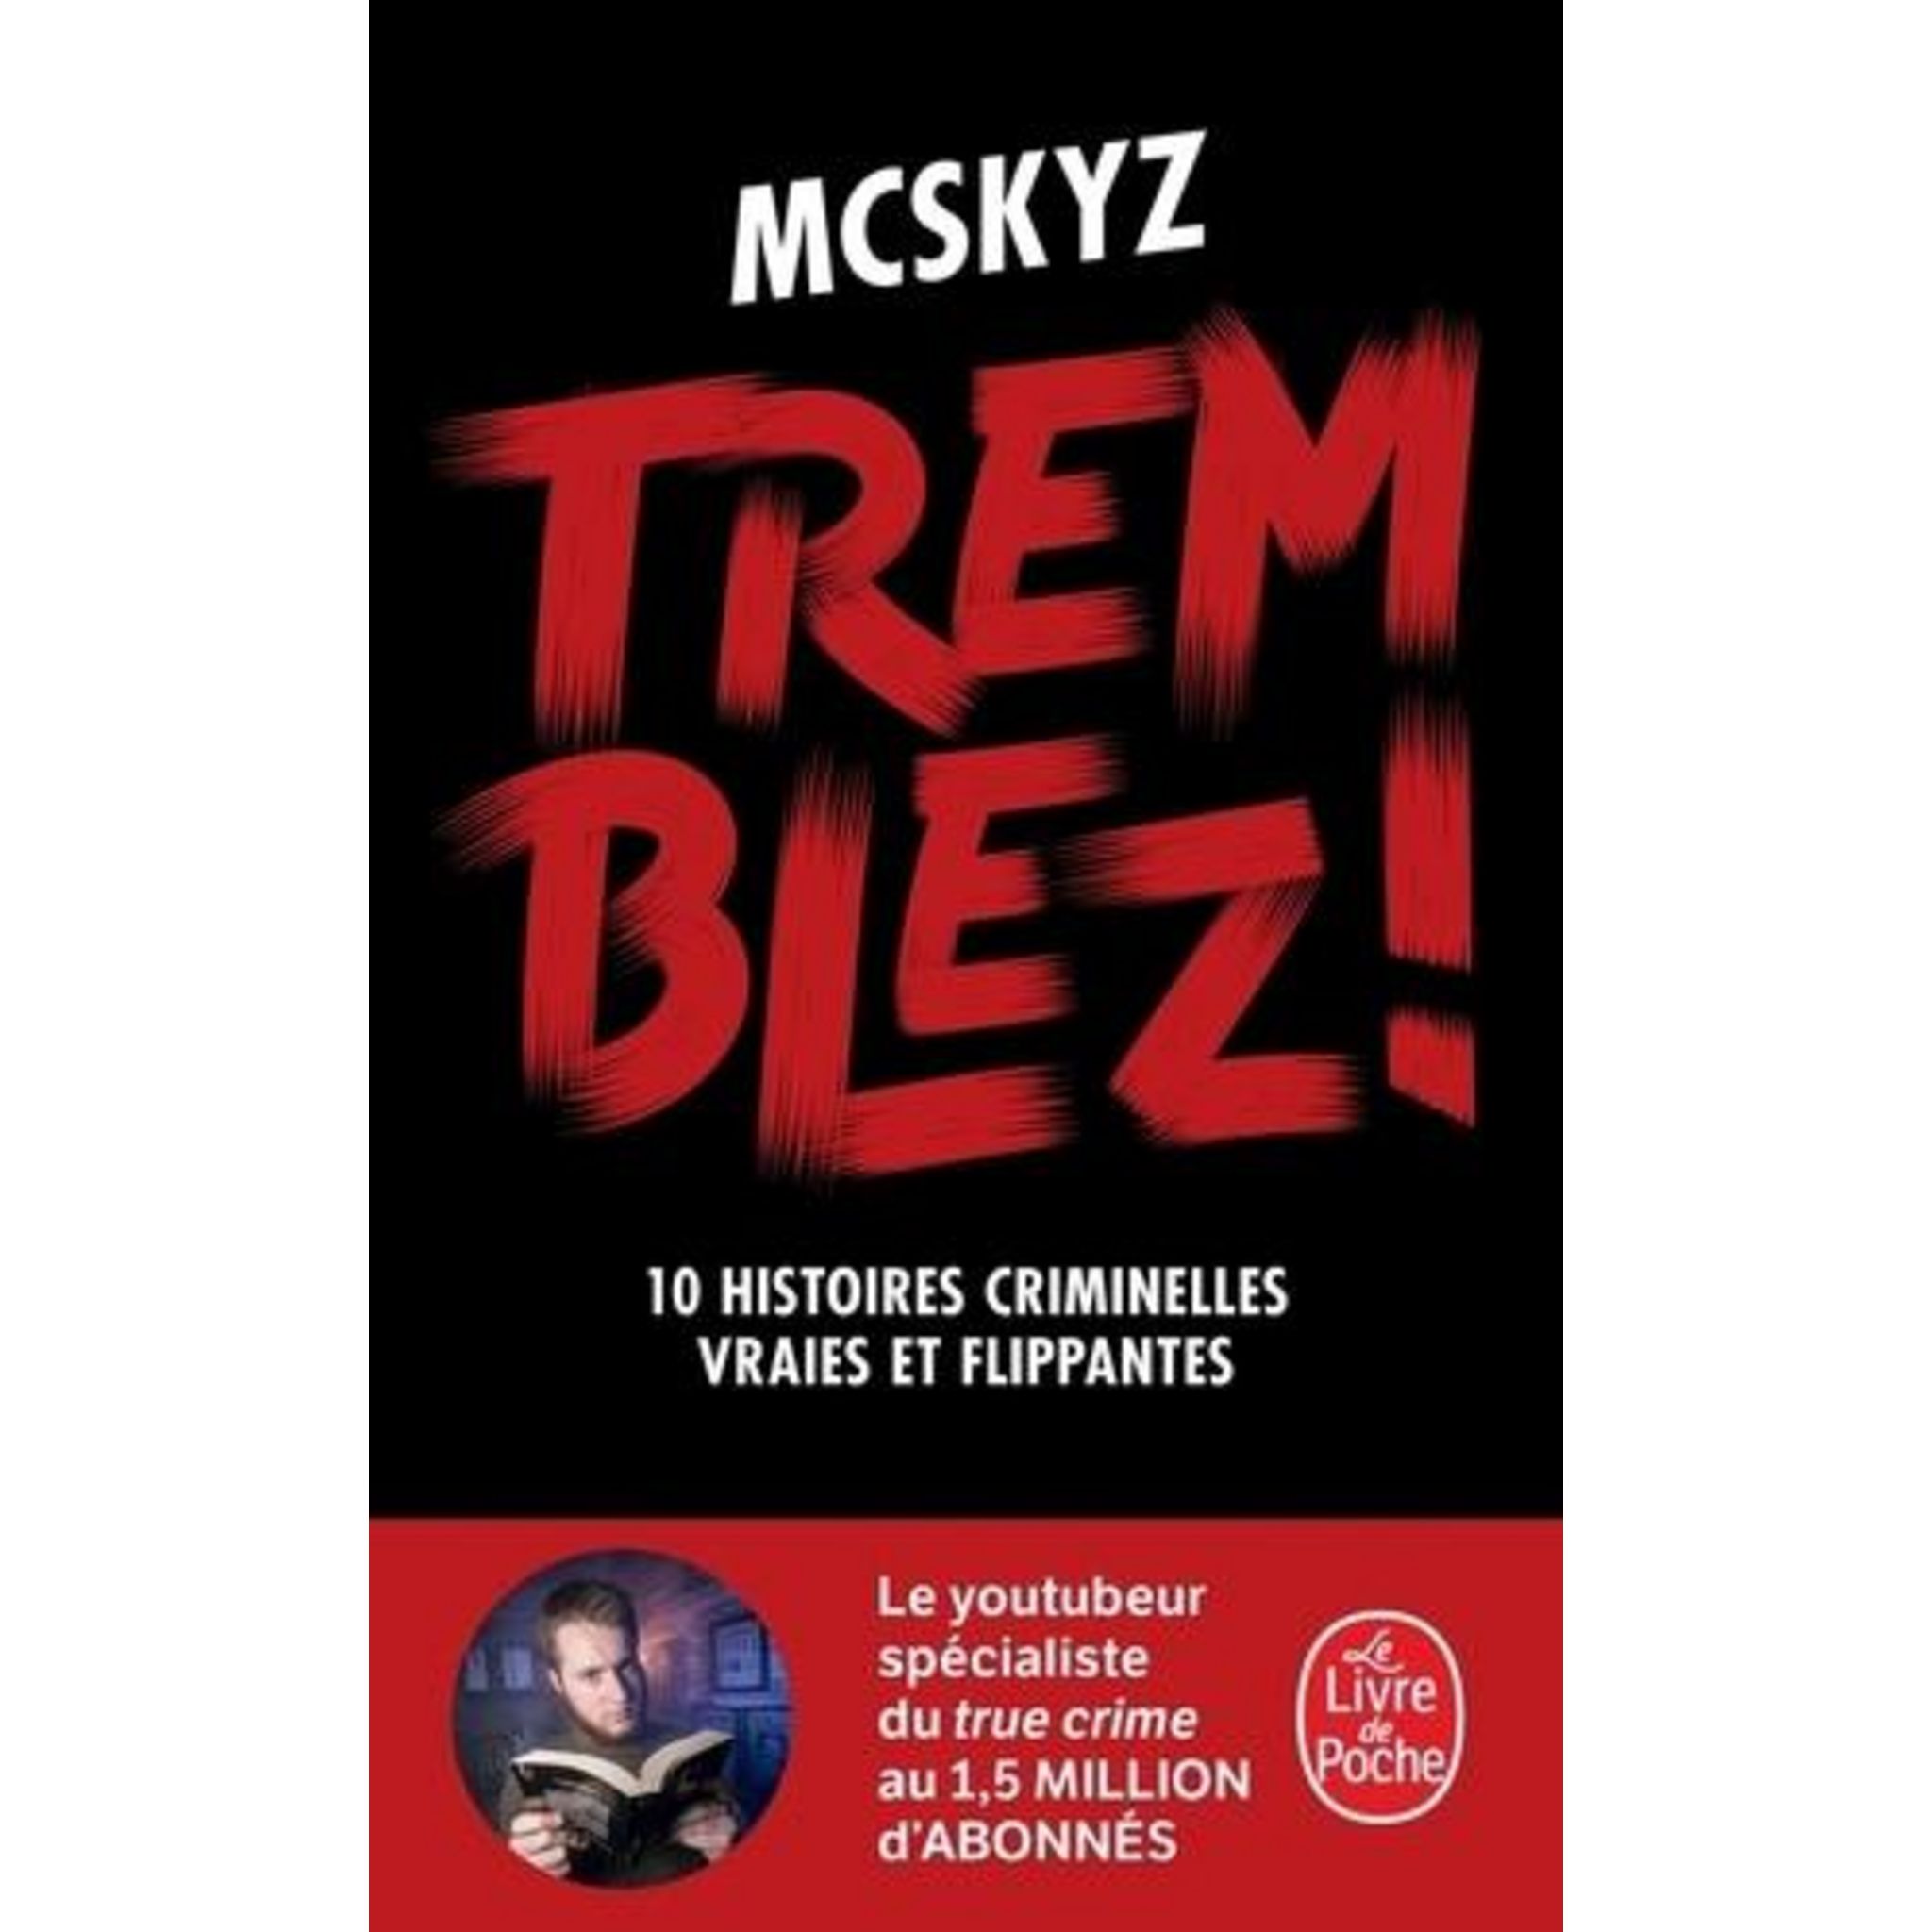 INTERVIEW AVEC MCSKYZ : LE UR TRUE CRIME 